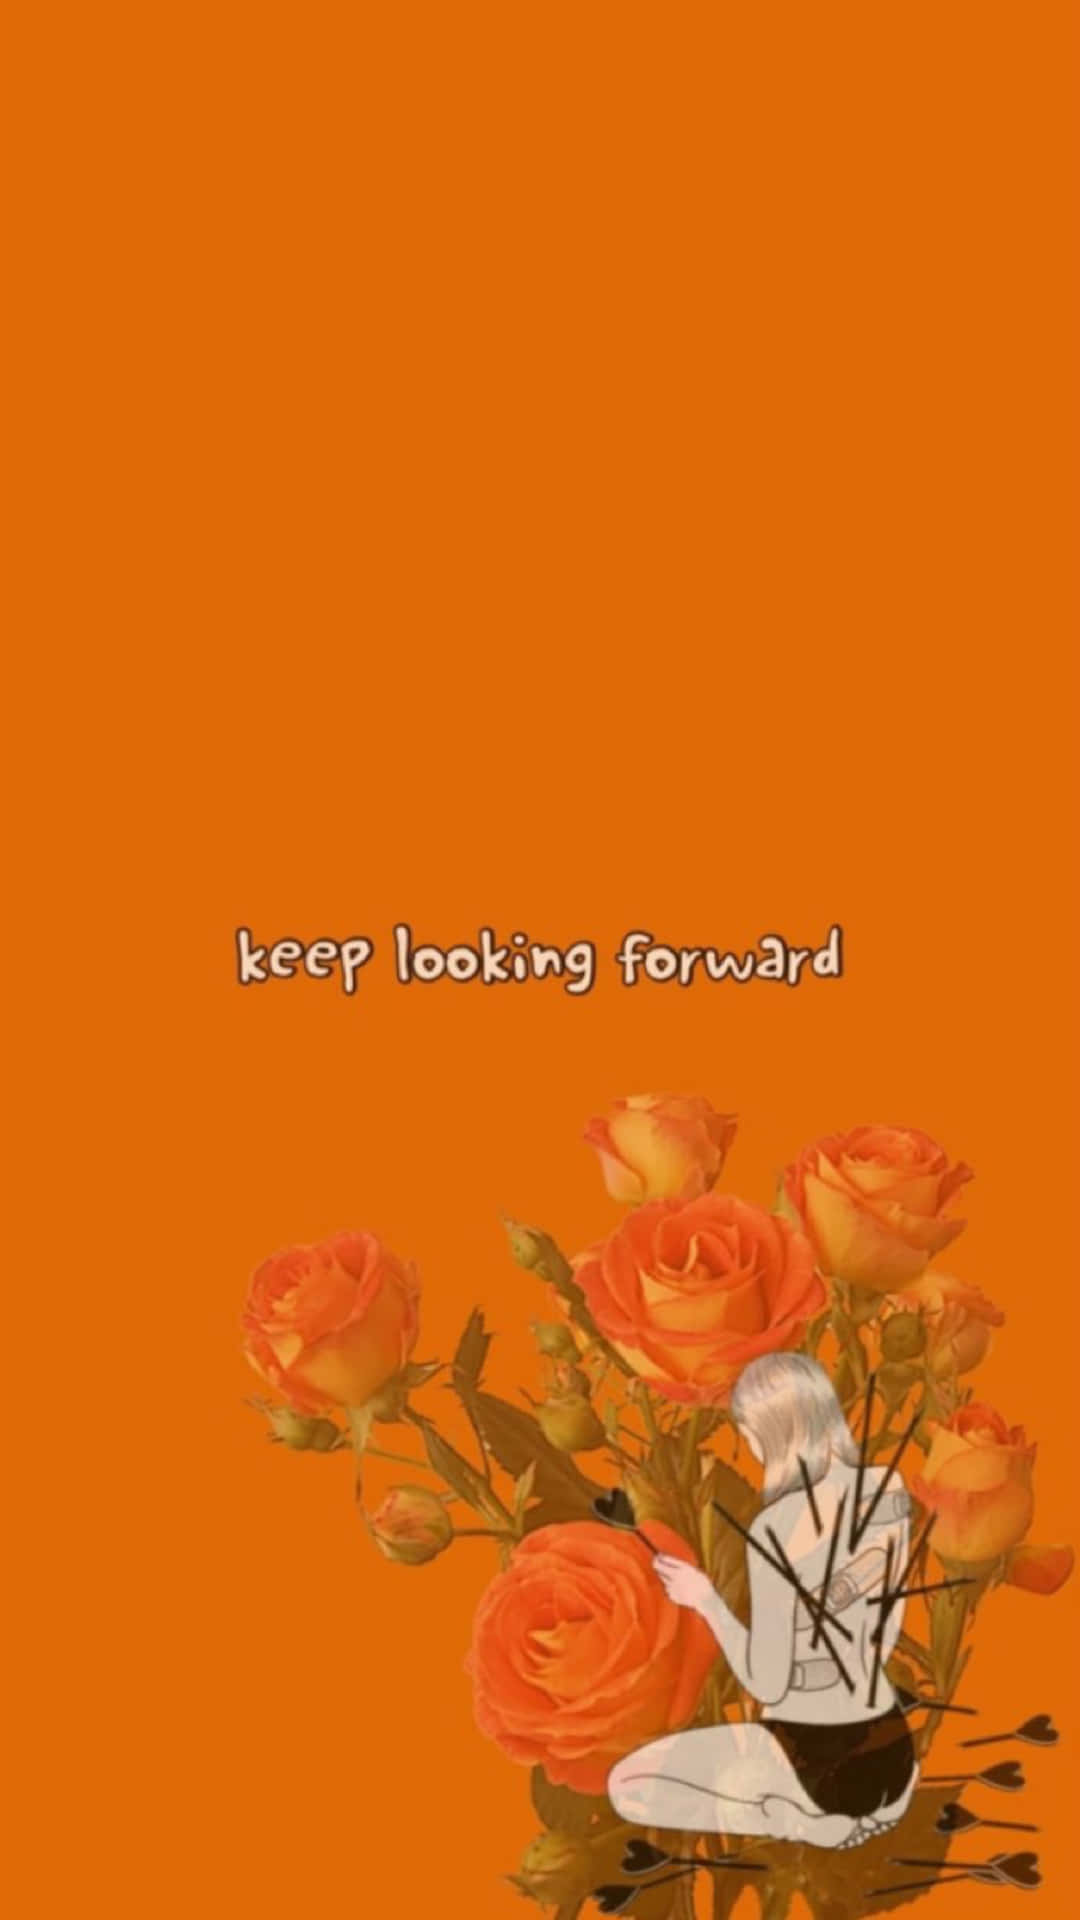 Keep Looking Forward Orange Aesthetic Phone Wallpaper